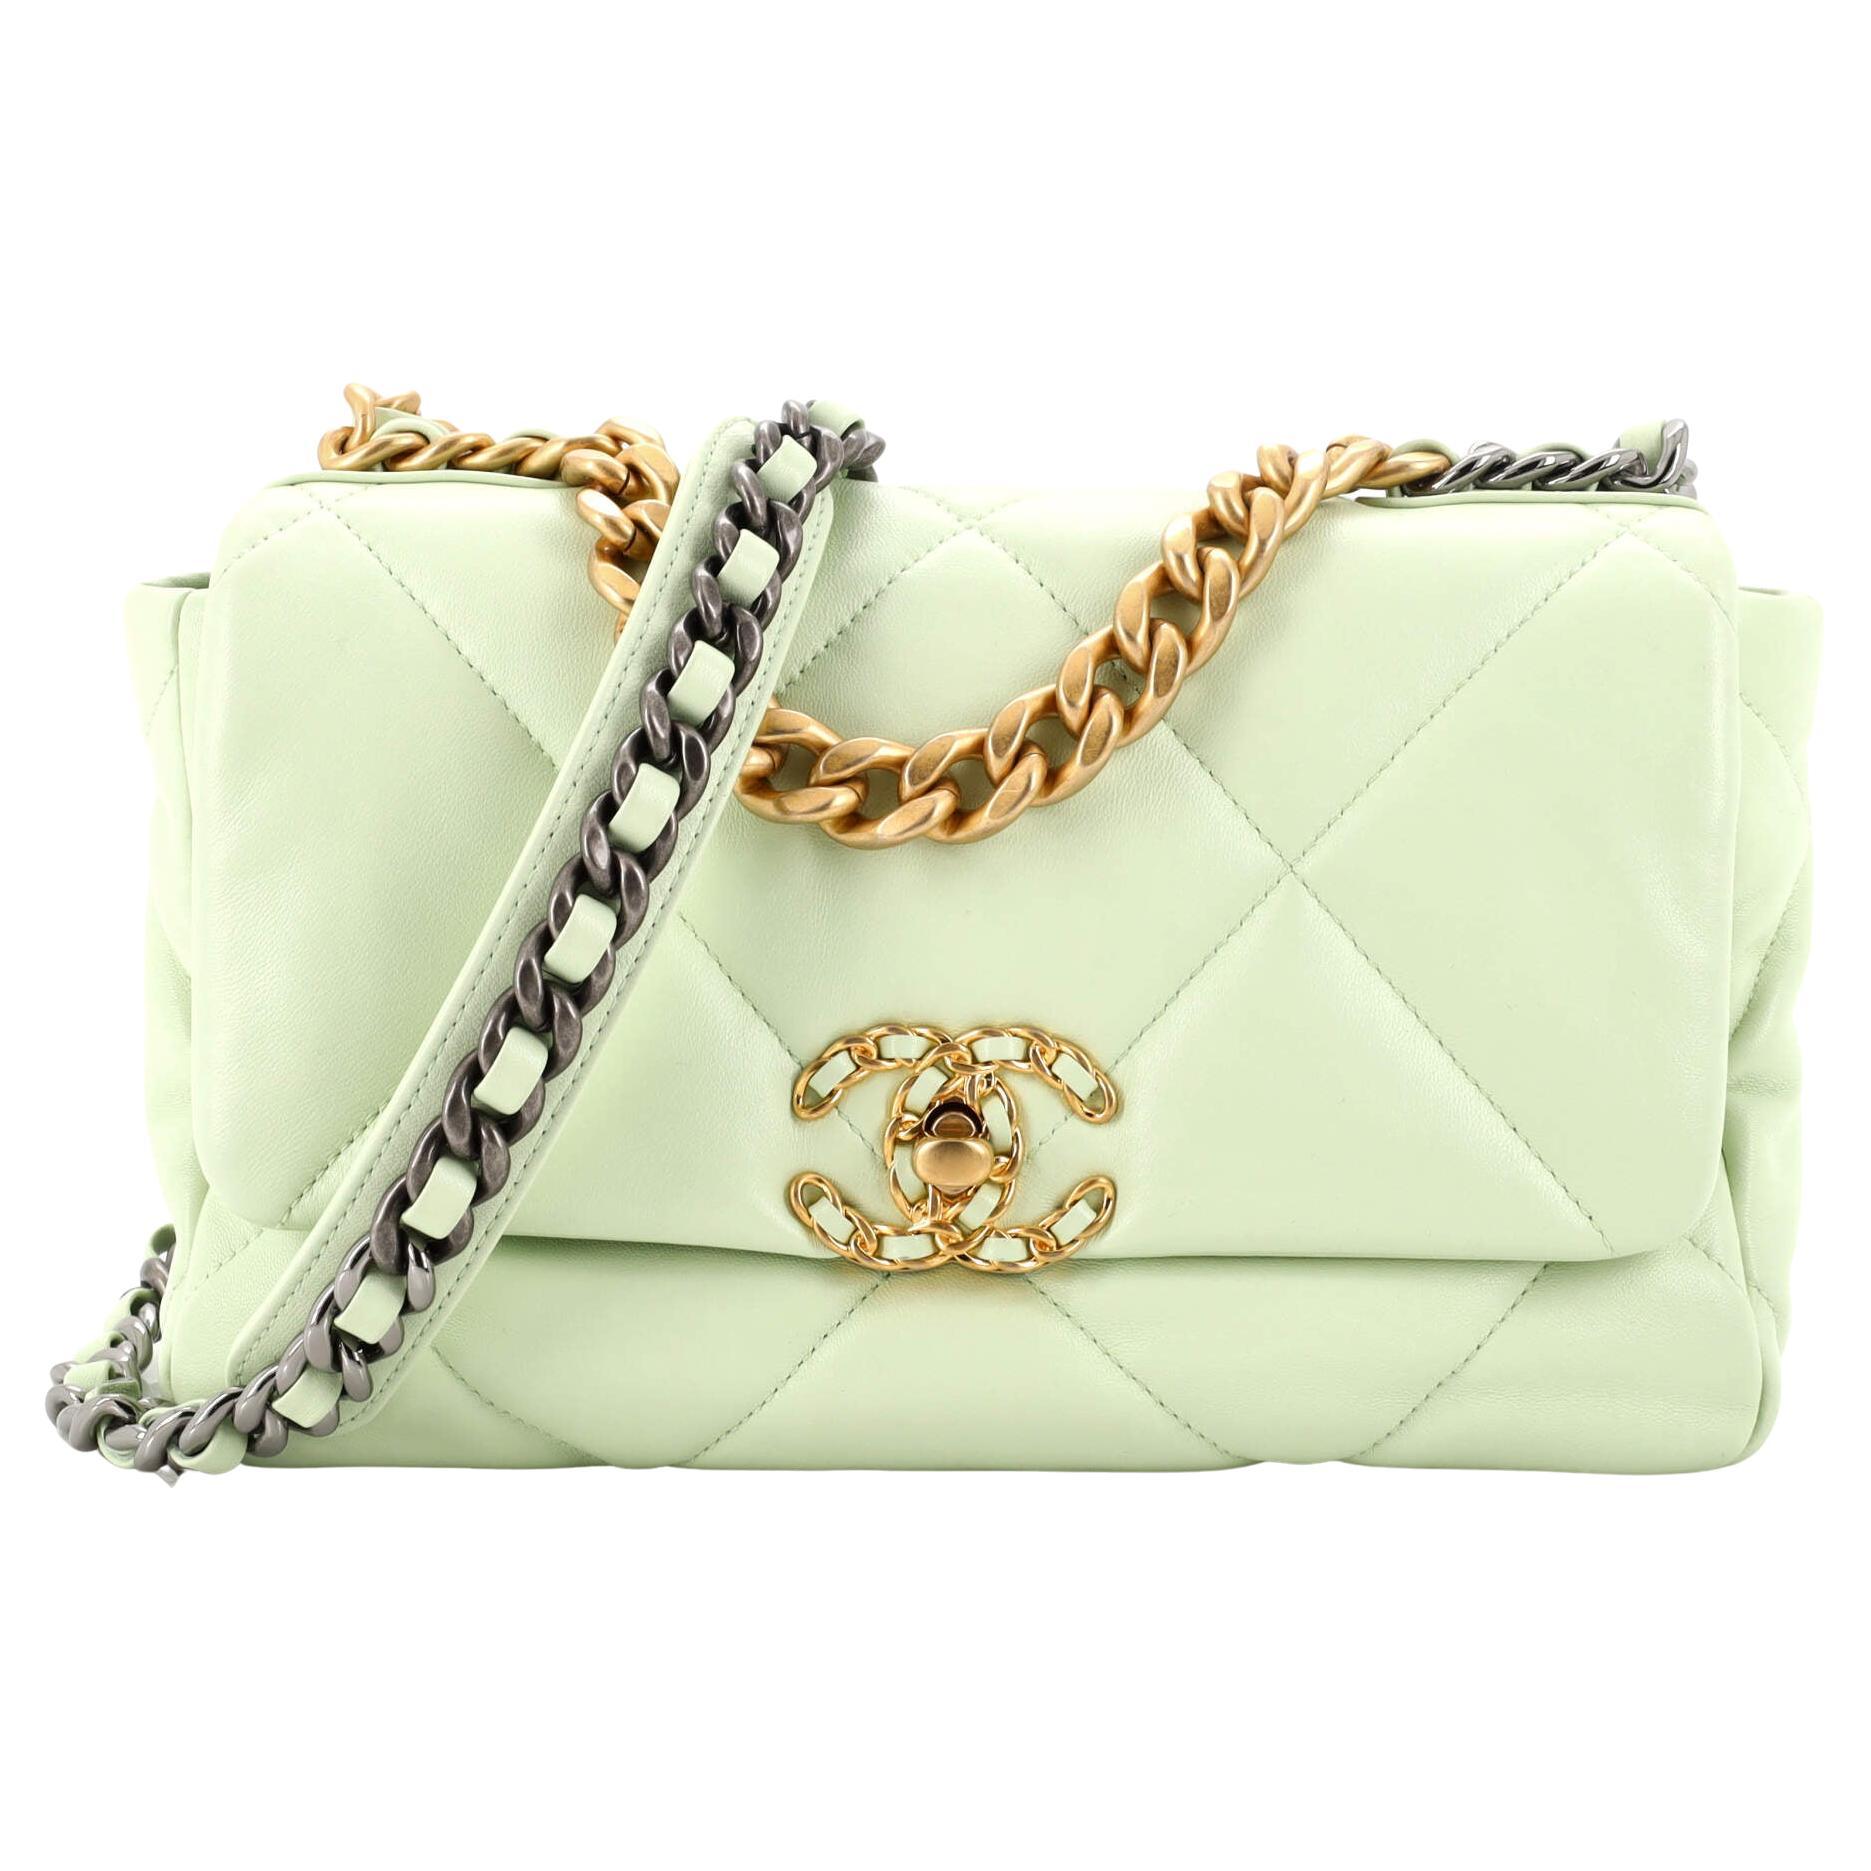 Chanel 19 Handbags - 395 For Sale on 1stDibs